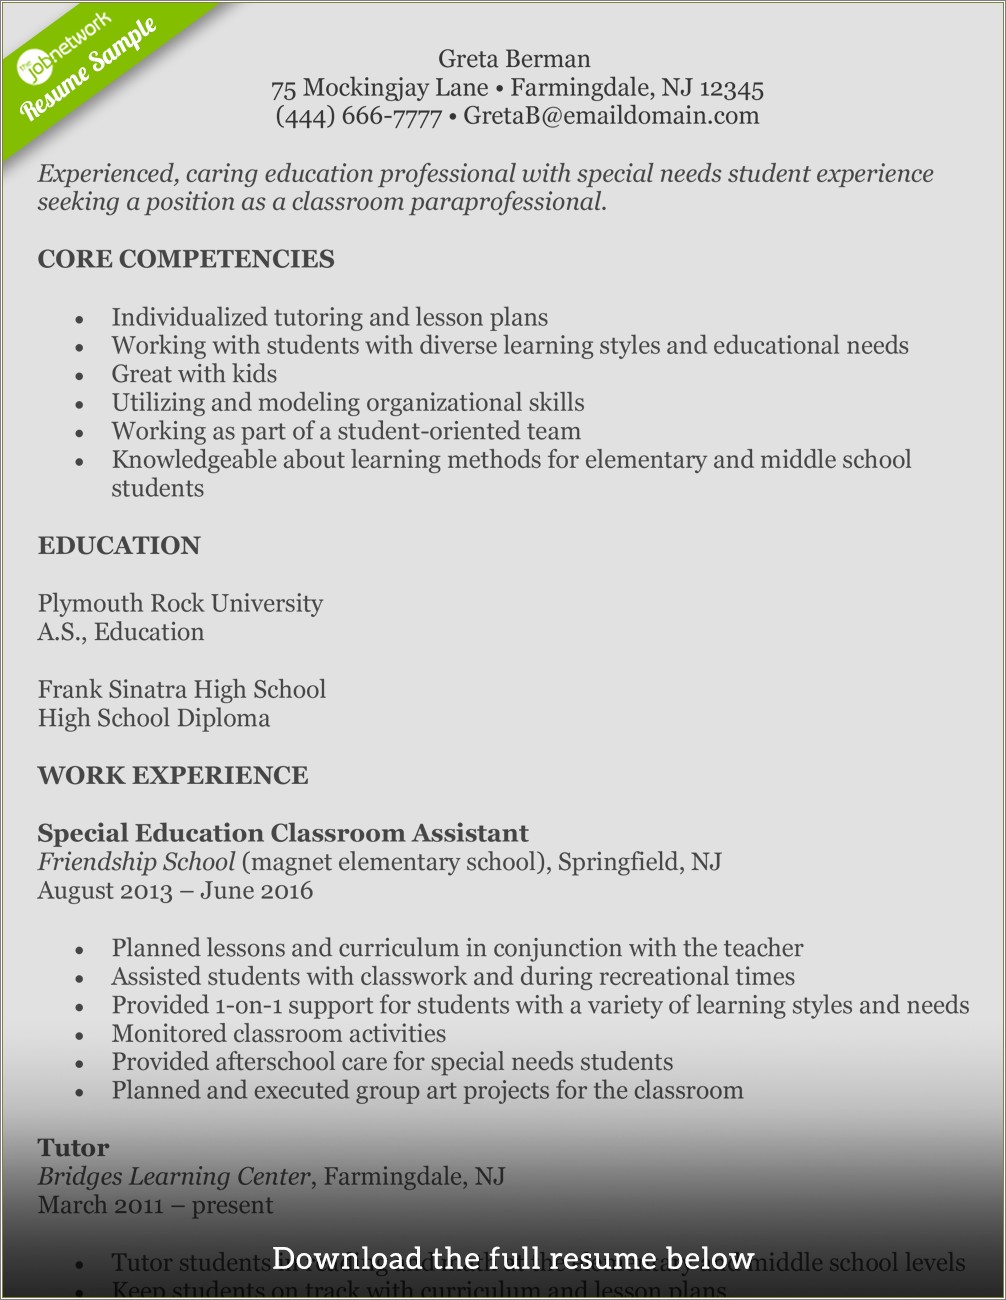 Resume Objective For Social Studies Teacher